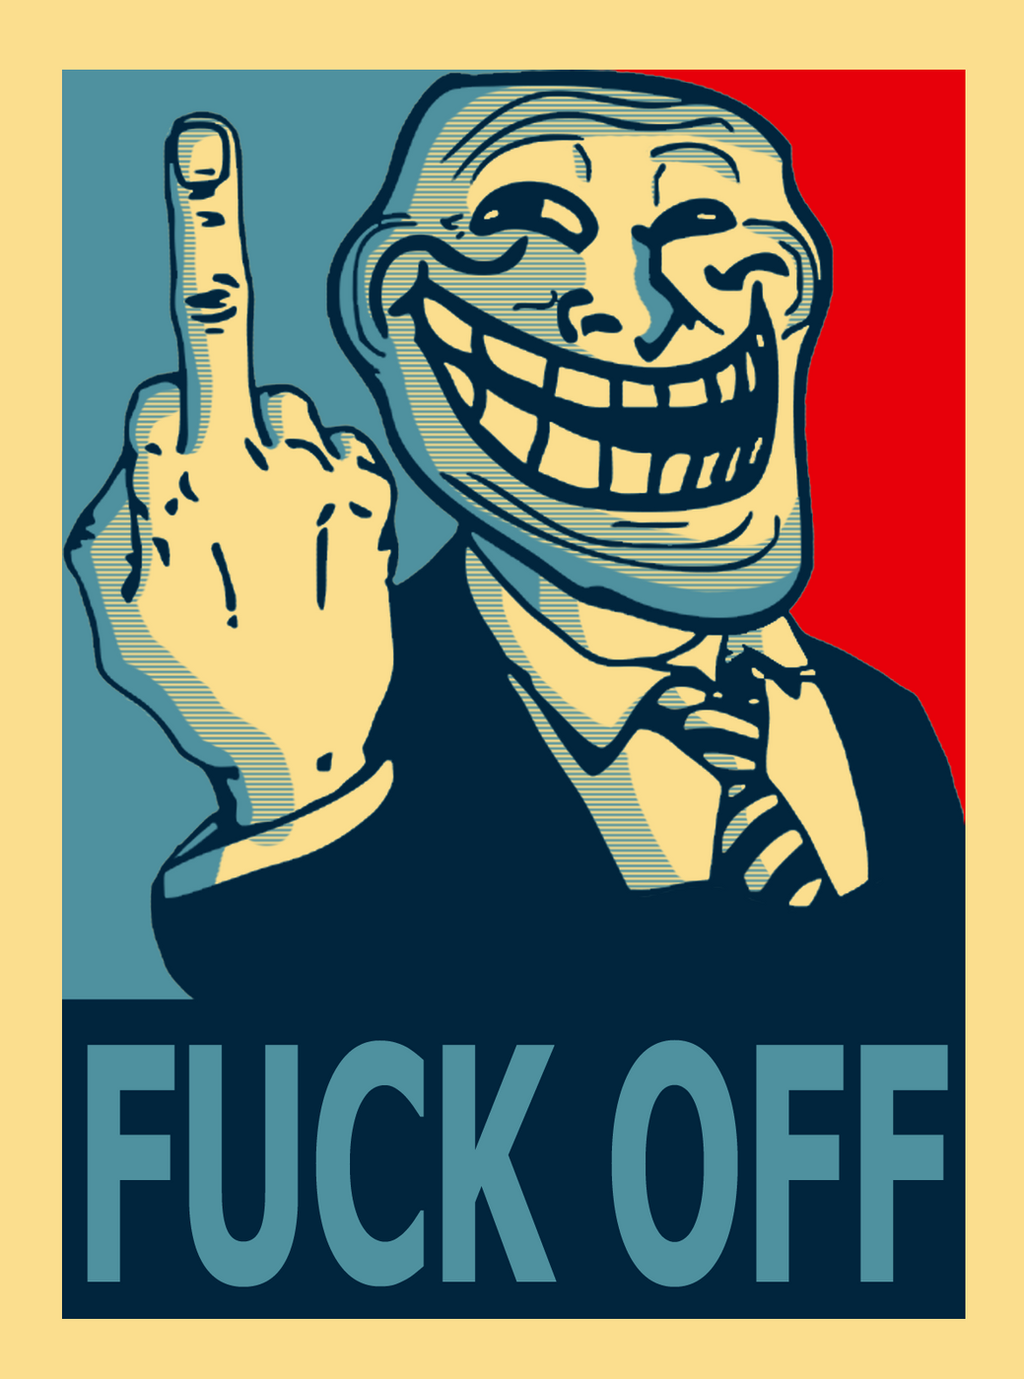 trollface_for_president__political_poster_by_skull1045fox-d5vjsuk.png